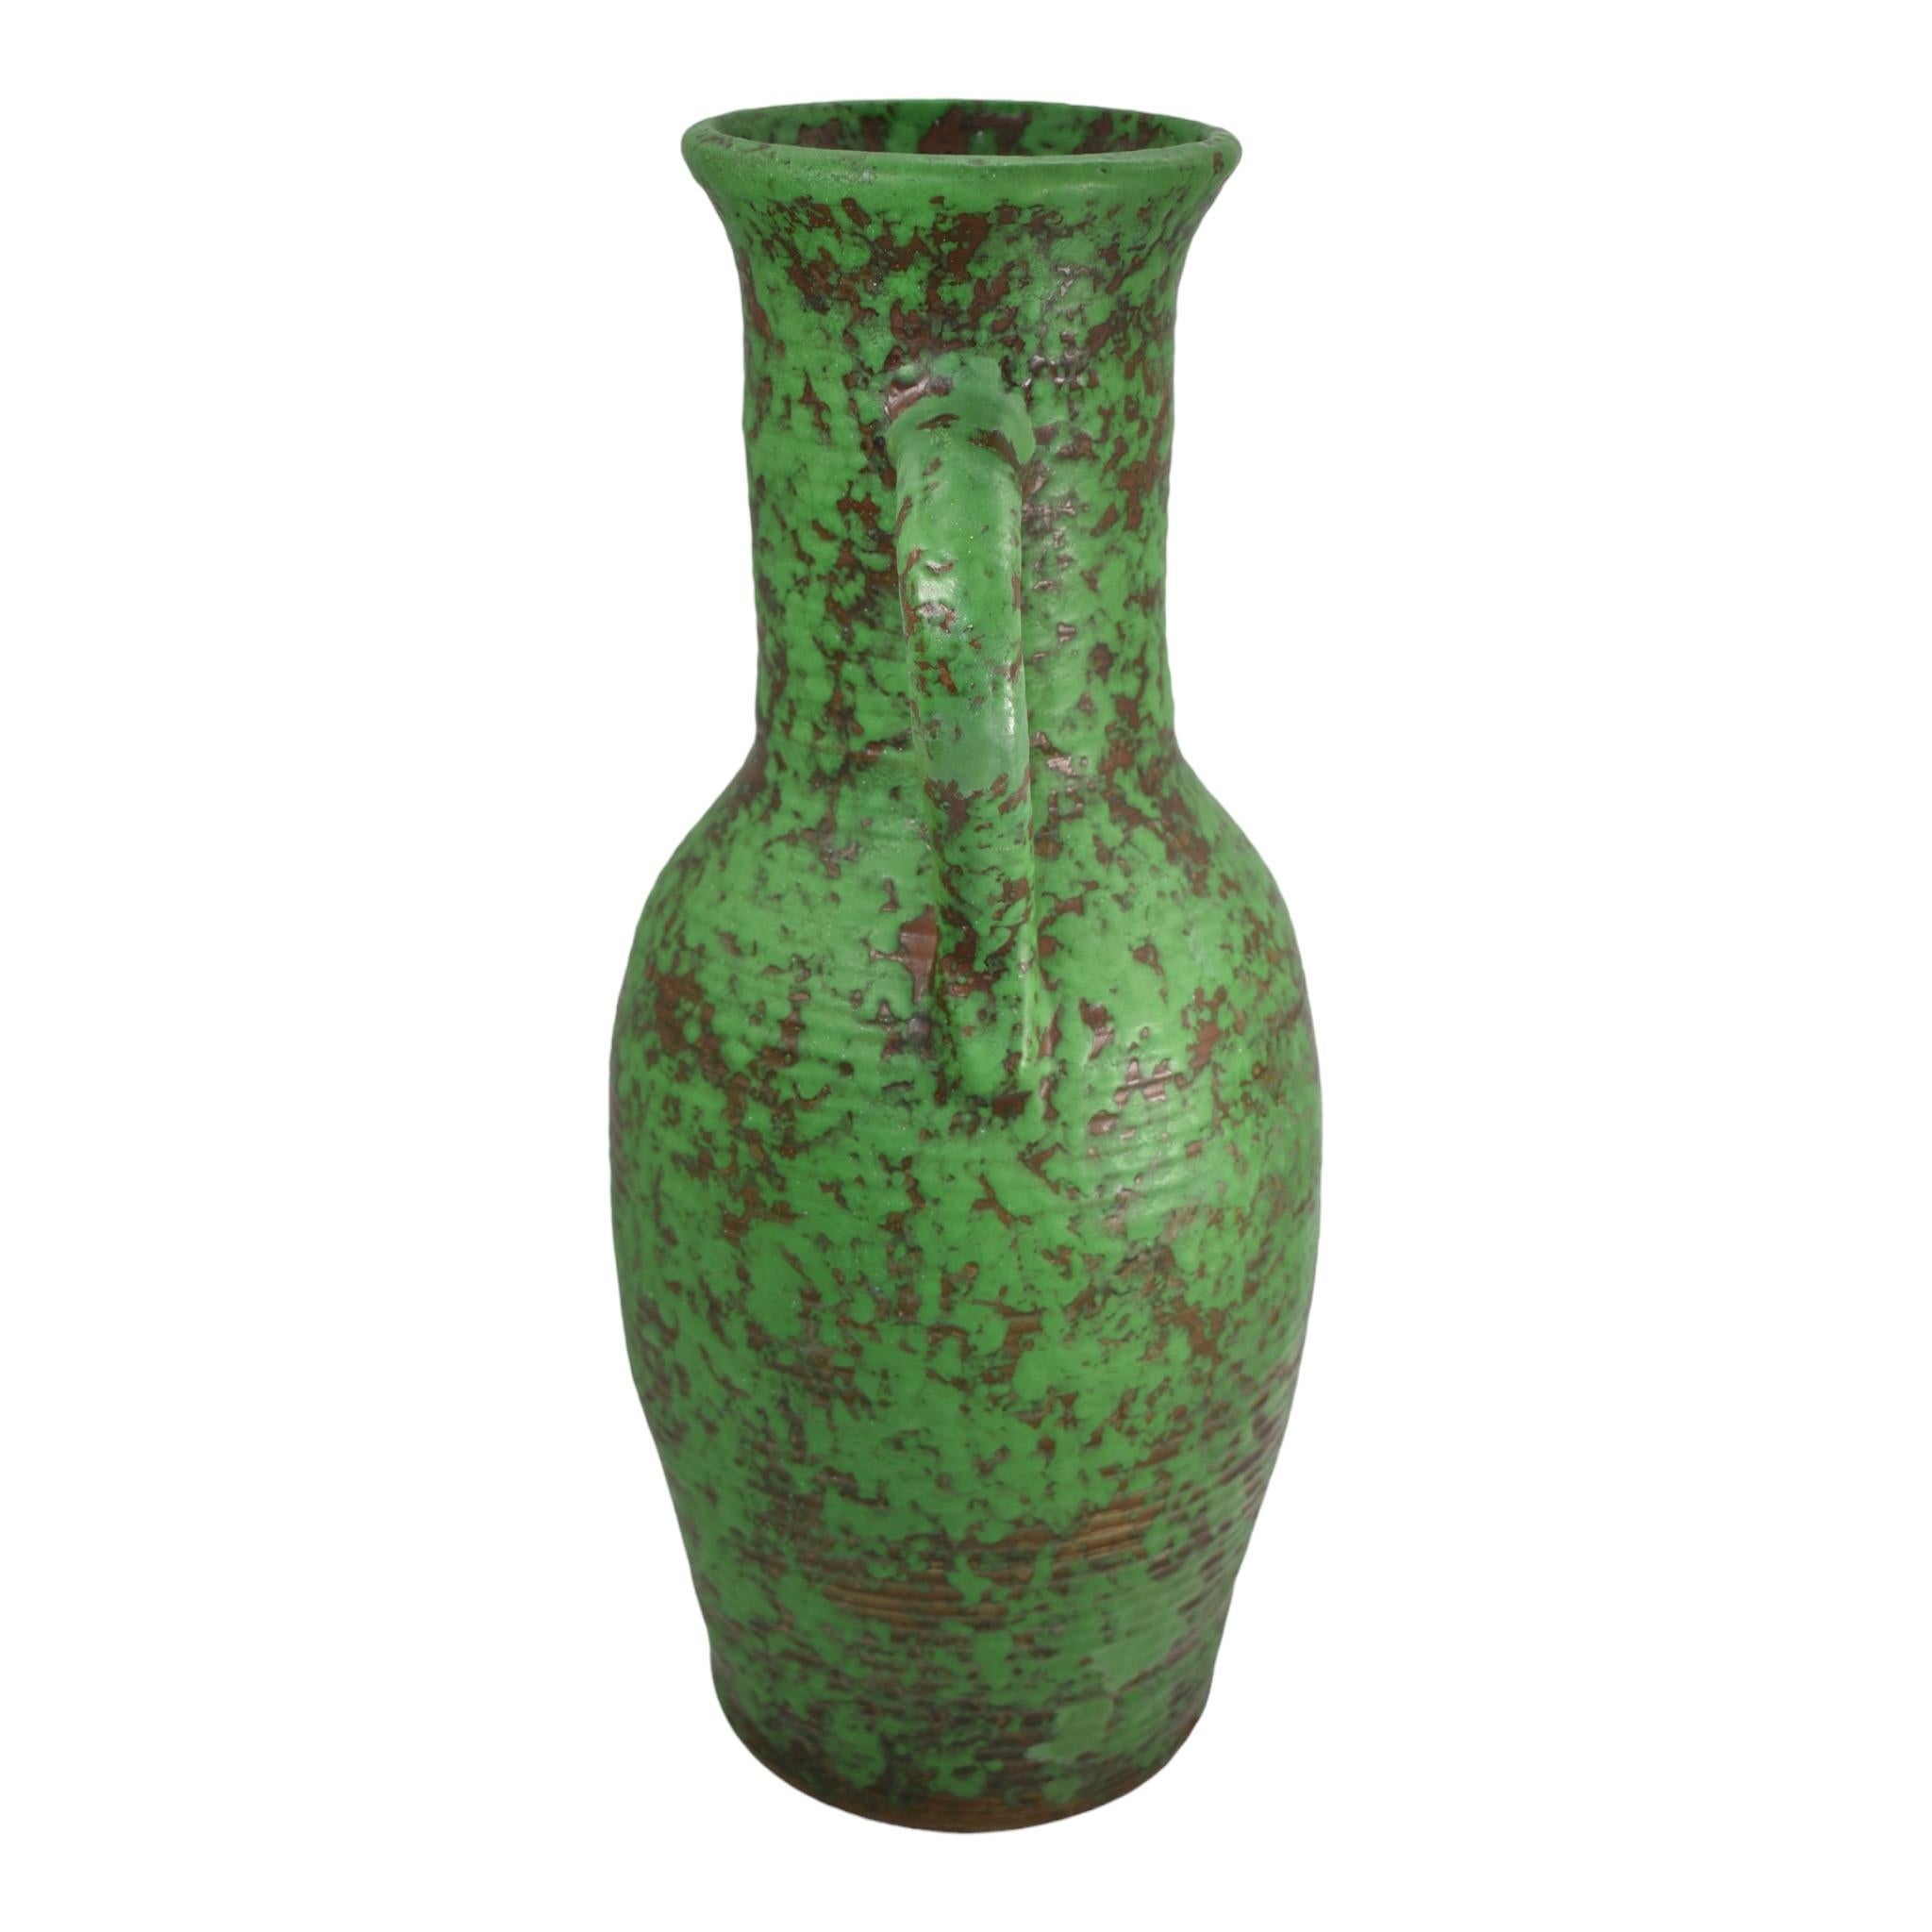 Weller Coppertone 1920er Jahre Vintage Arts and Crafts Pottery Grüne Bodenvase aus Keramik
Massive handgeworfene kunsthandwerkliche gerippte und behandelte Form mit super Farbe.
Zeigt sich gut mit einer professionellen nicht-zeigenden Restaurierung